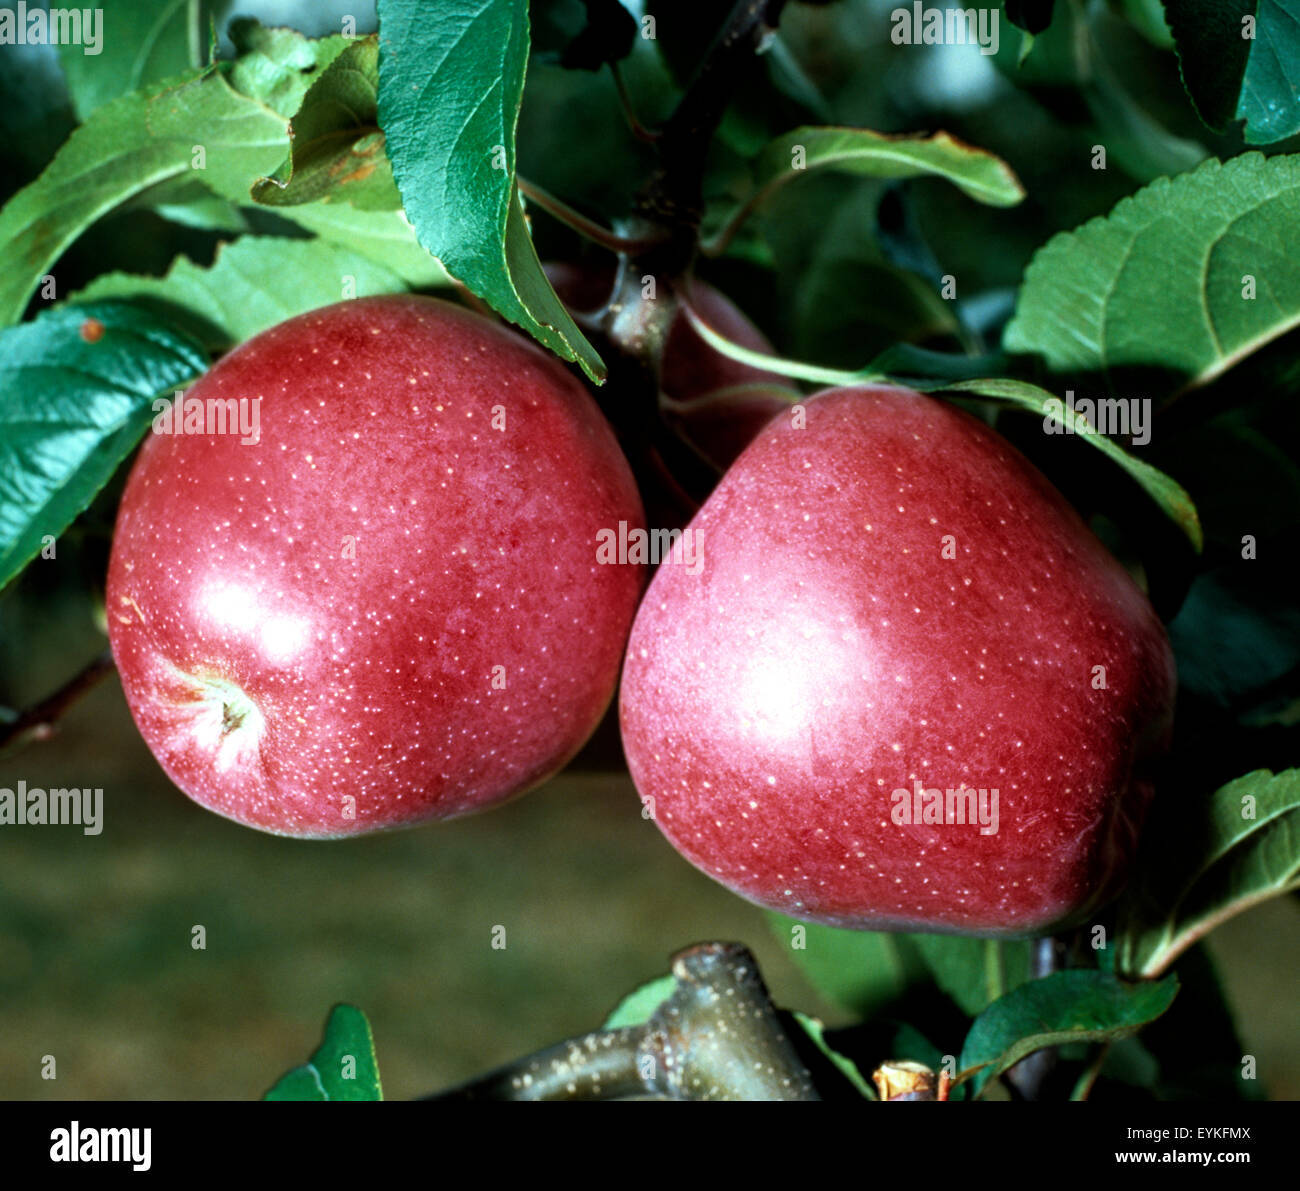 Gloster; Apfel; Apfelsorte, Apfel, Kernobst, Obst, Stock Photo